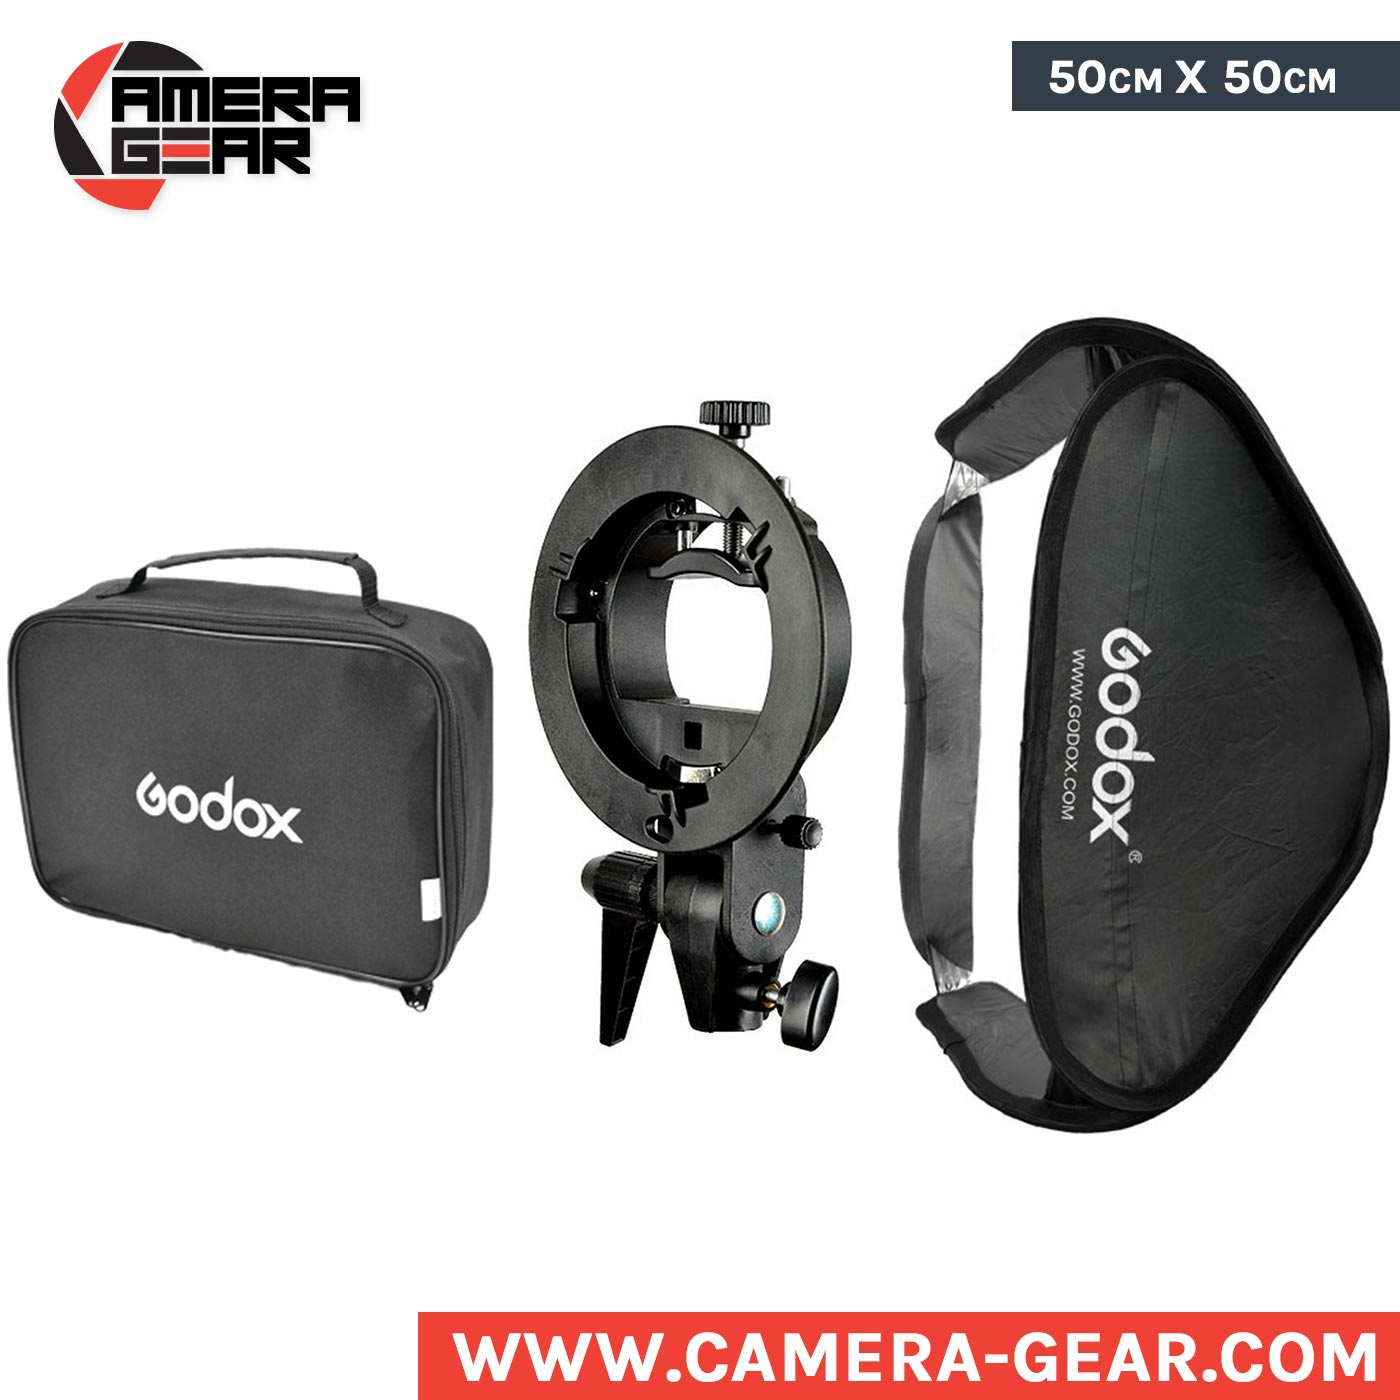 Godox Softbox 50x50 with S type bracket - Light Modifiers - Camera